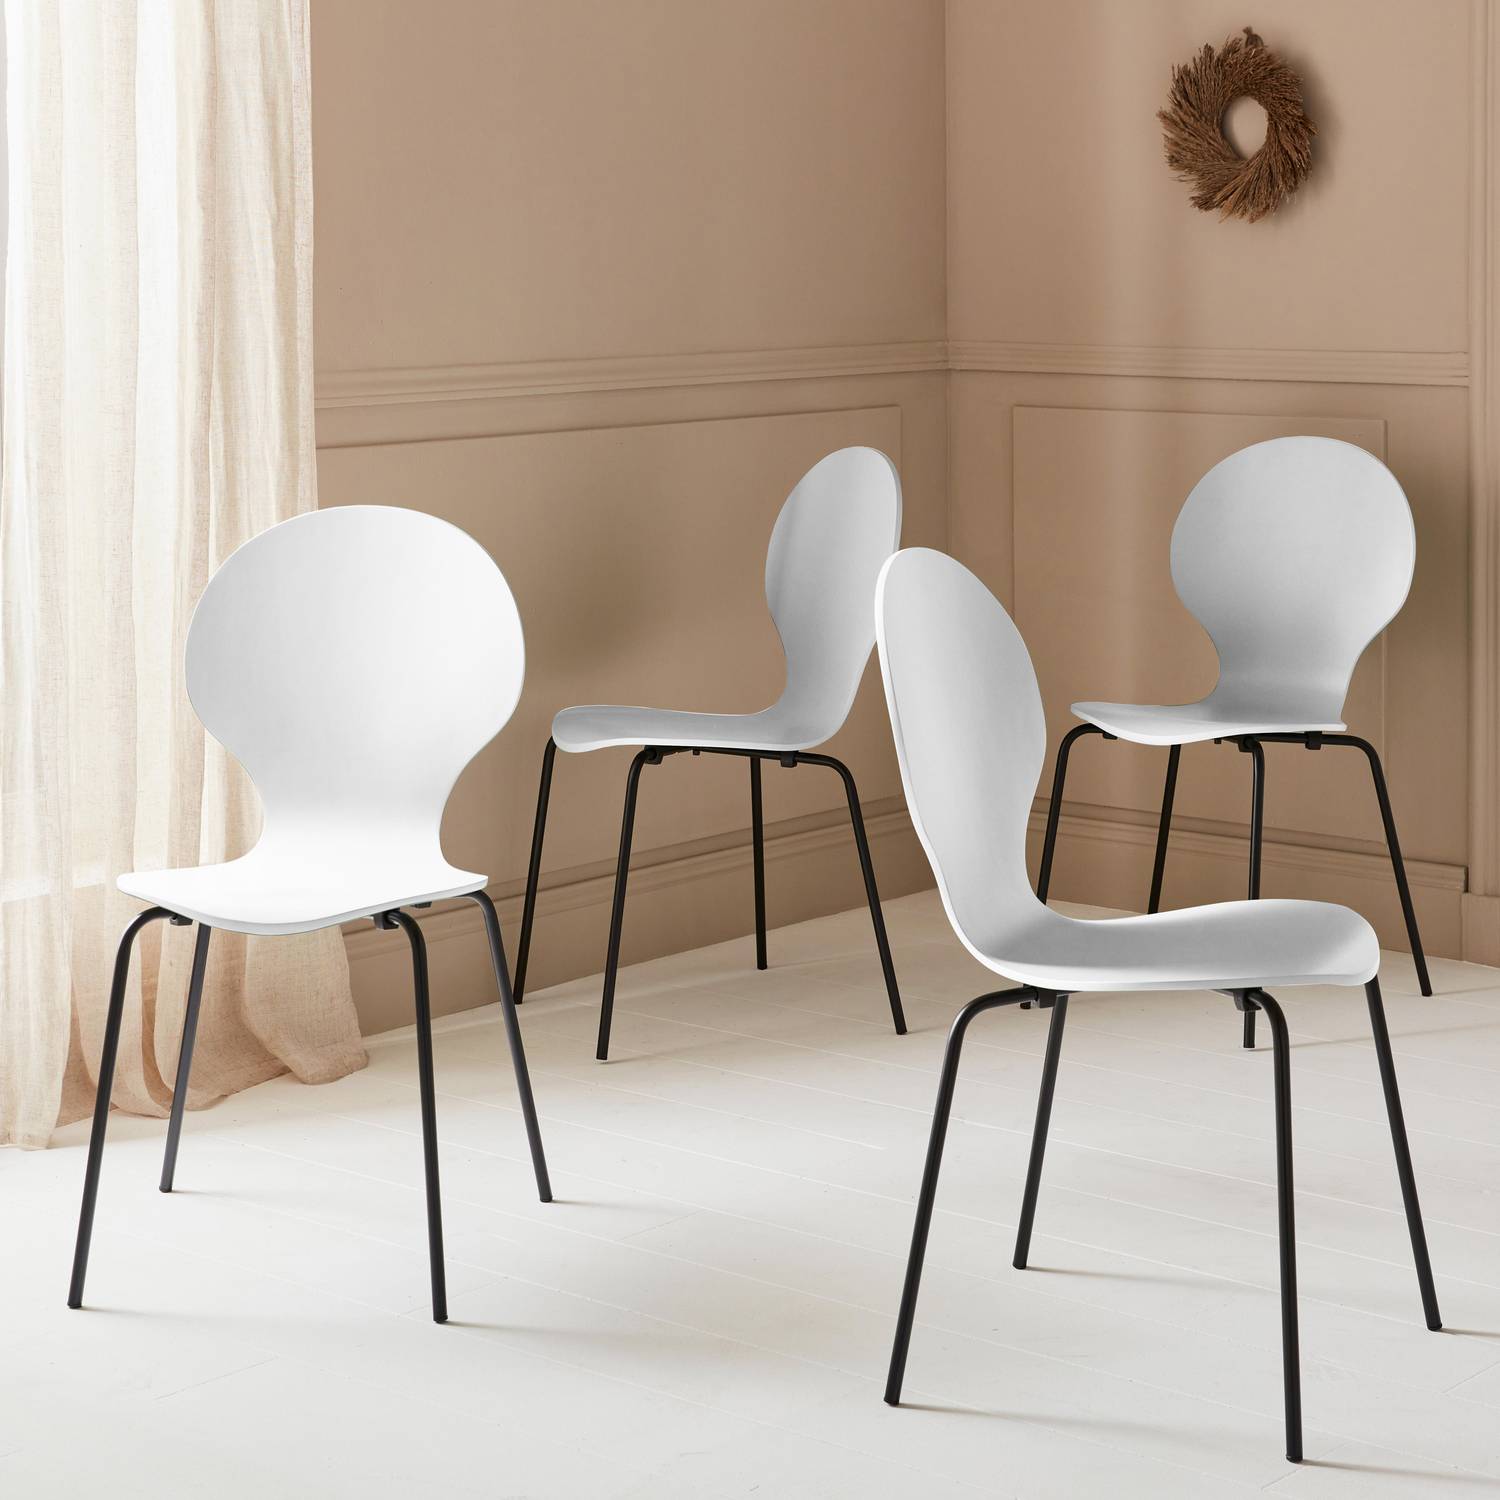 Conjunto de 4 cadeiras empilháveis retro brancas, madeira de hevea e contraplacado, pernas de aço, Naomi, L 43 x P 48 x A 87cm Photo2